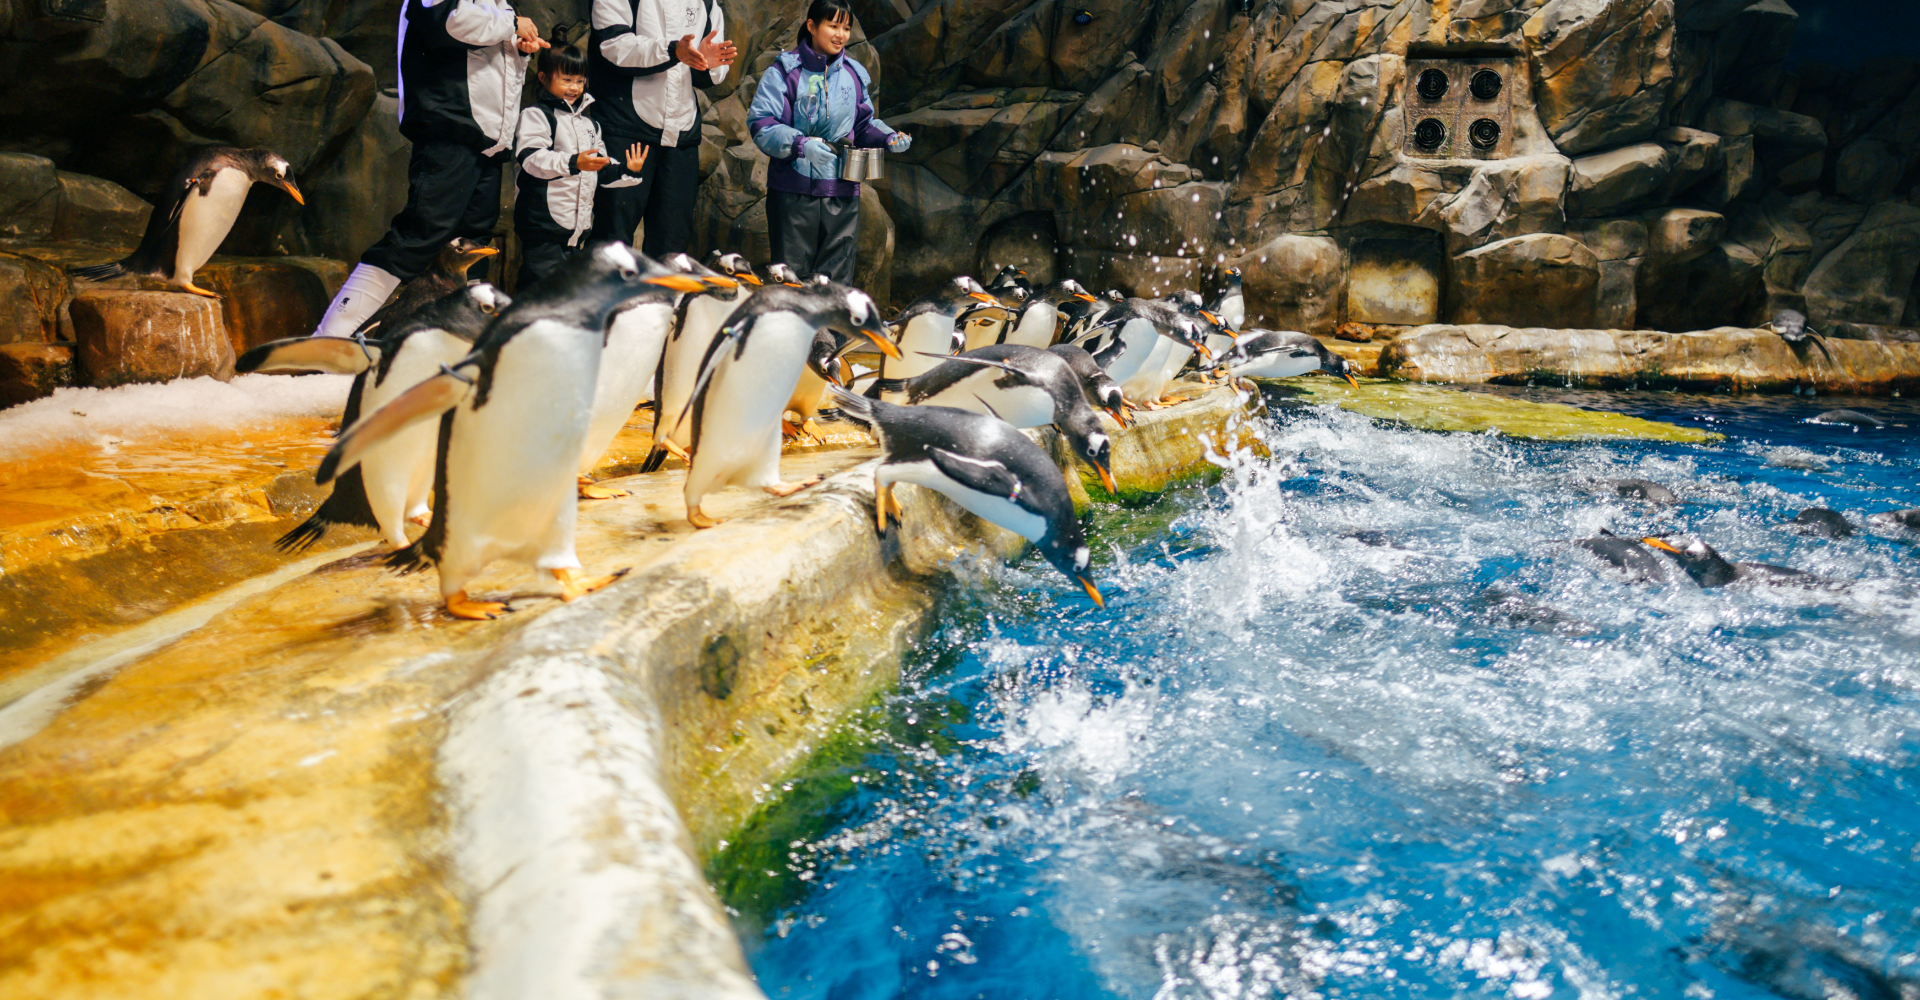 https://media.oceanpark.com.hk/files/s3fs-public/penguin-expedition-innerpage-d-r2.jpg